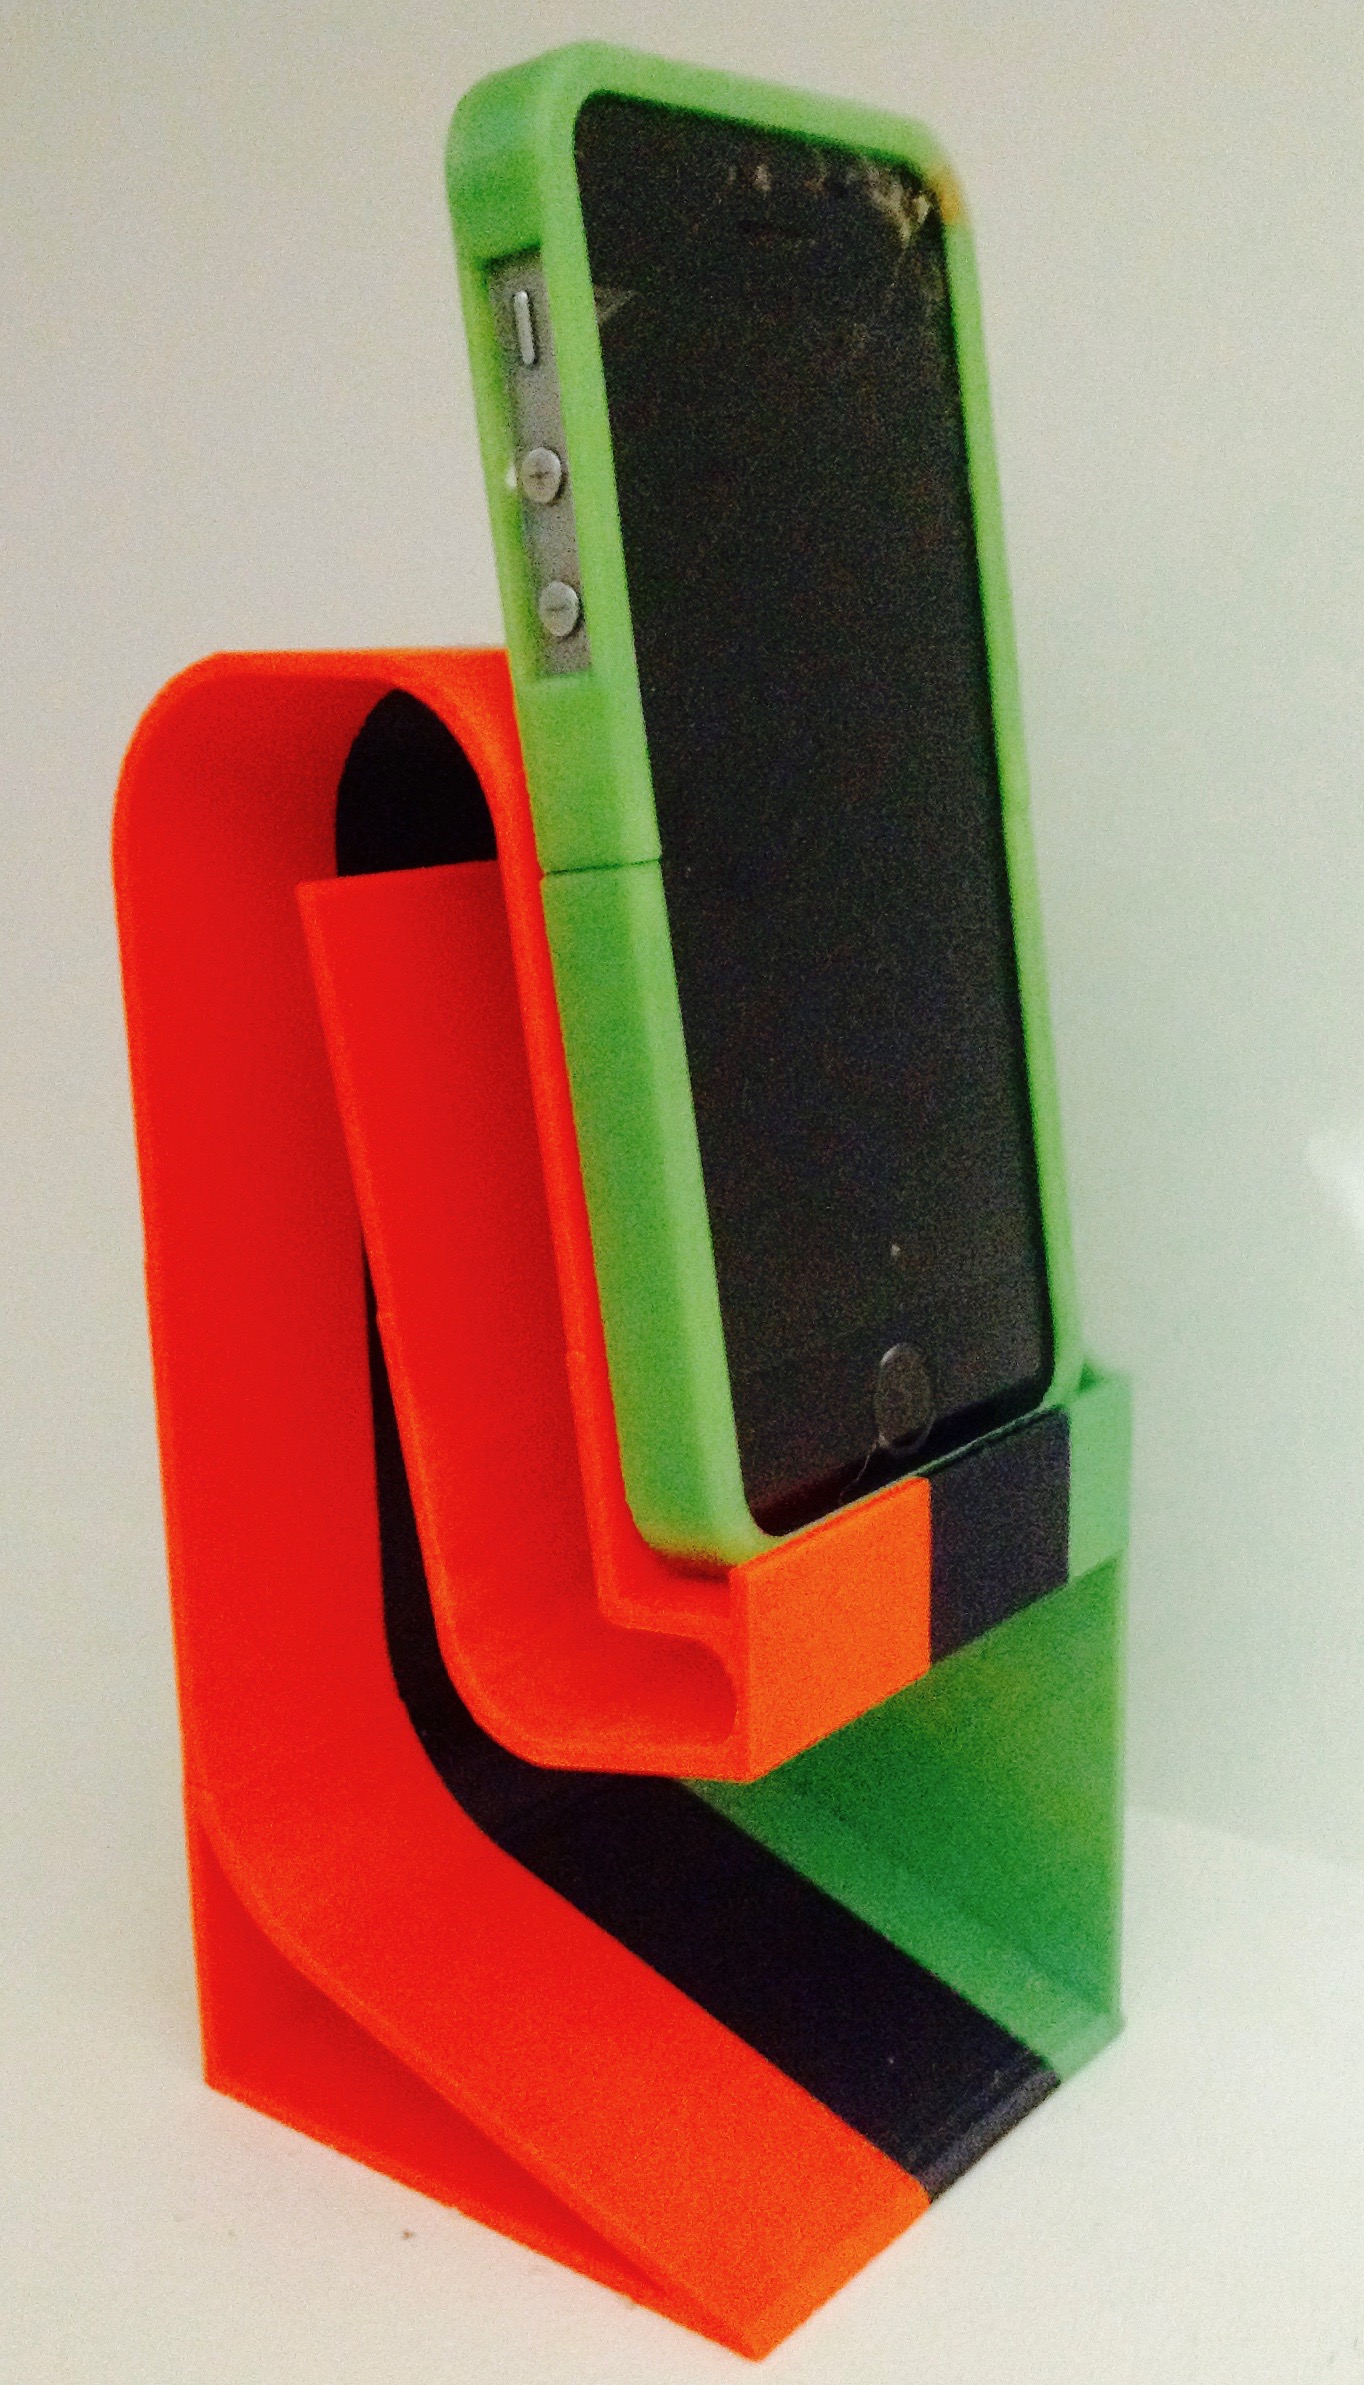 Passive speaker - folded horn - Phone / Iphone5